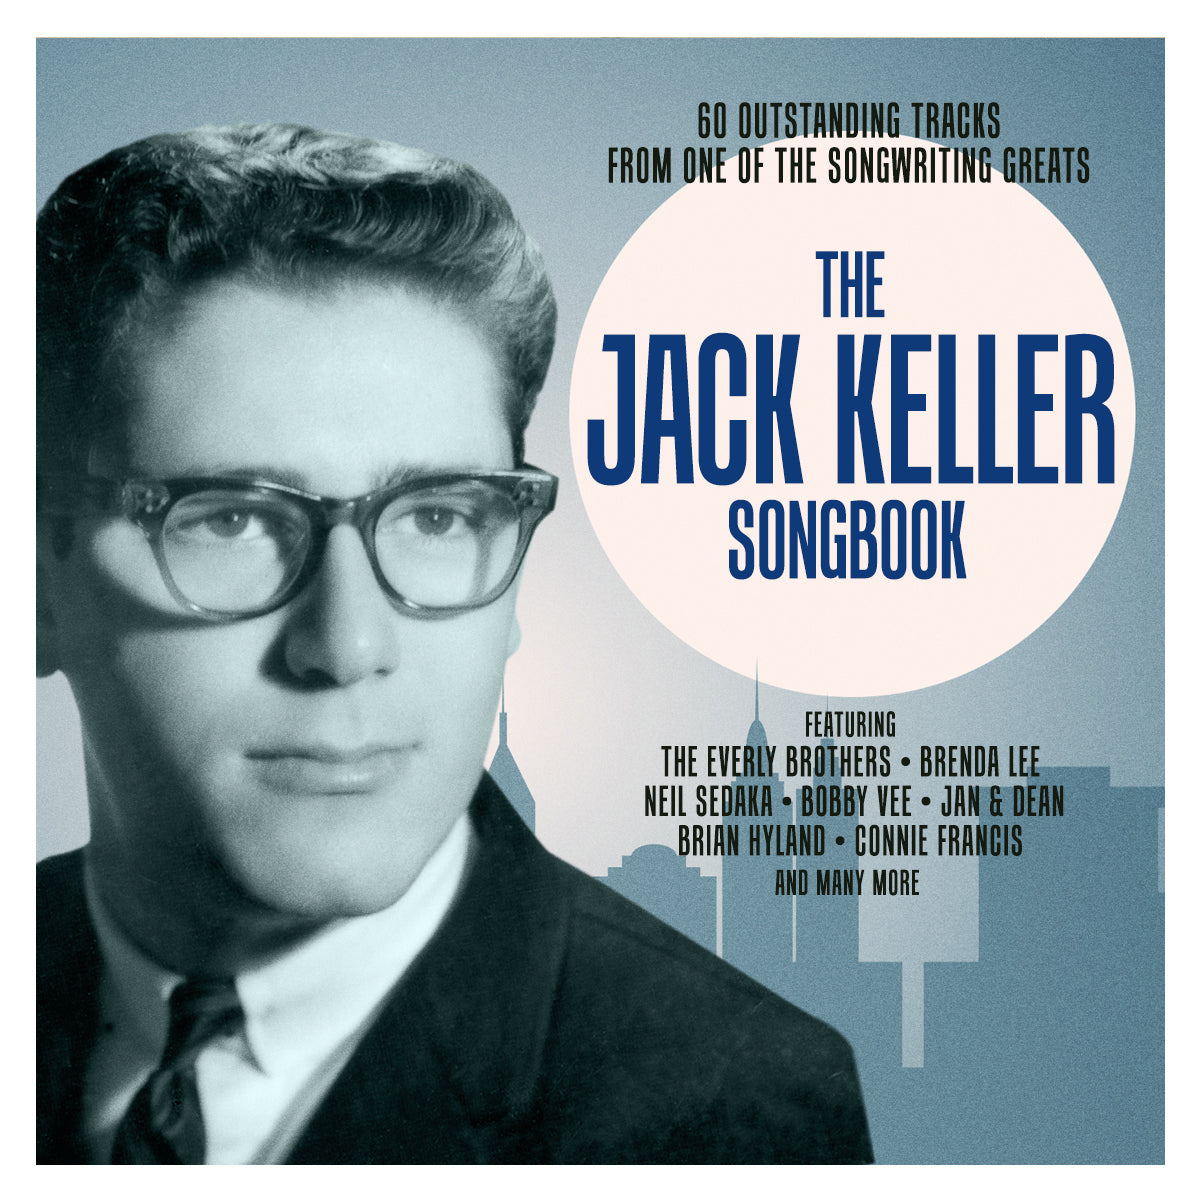 JACK KELLER SONGBOOK (3 CDs)